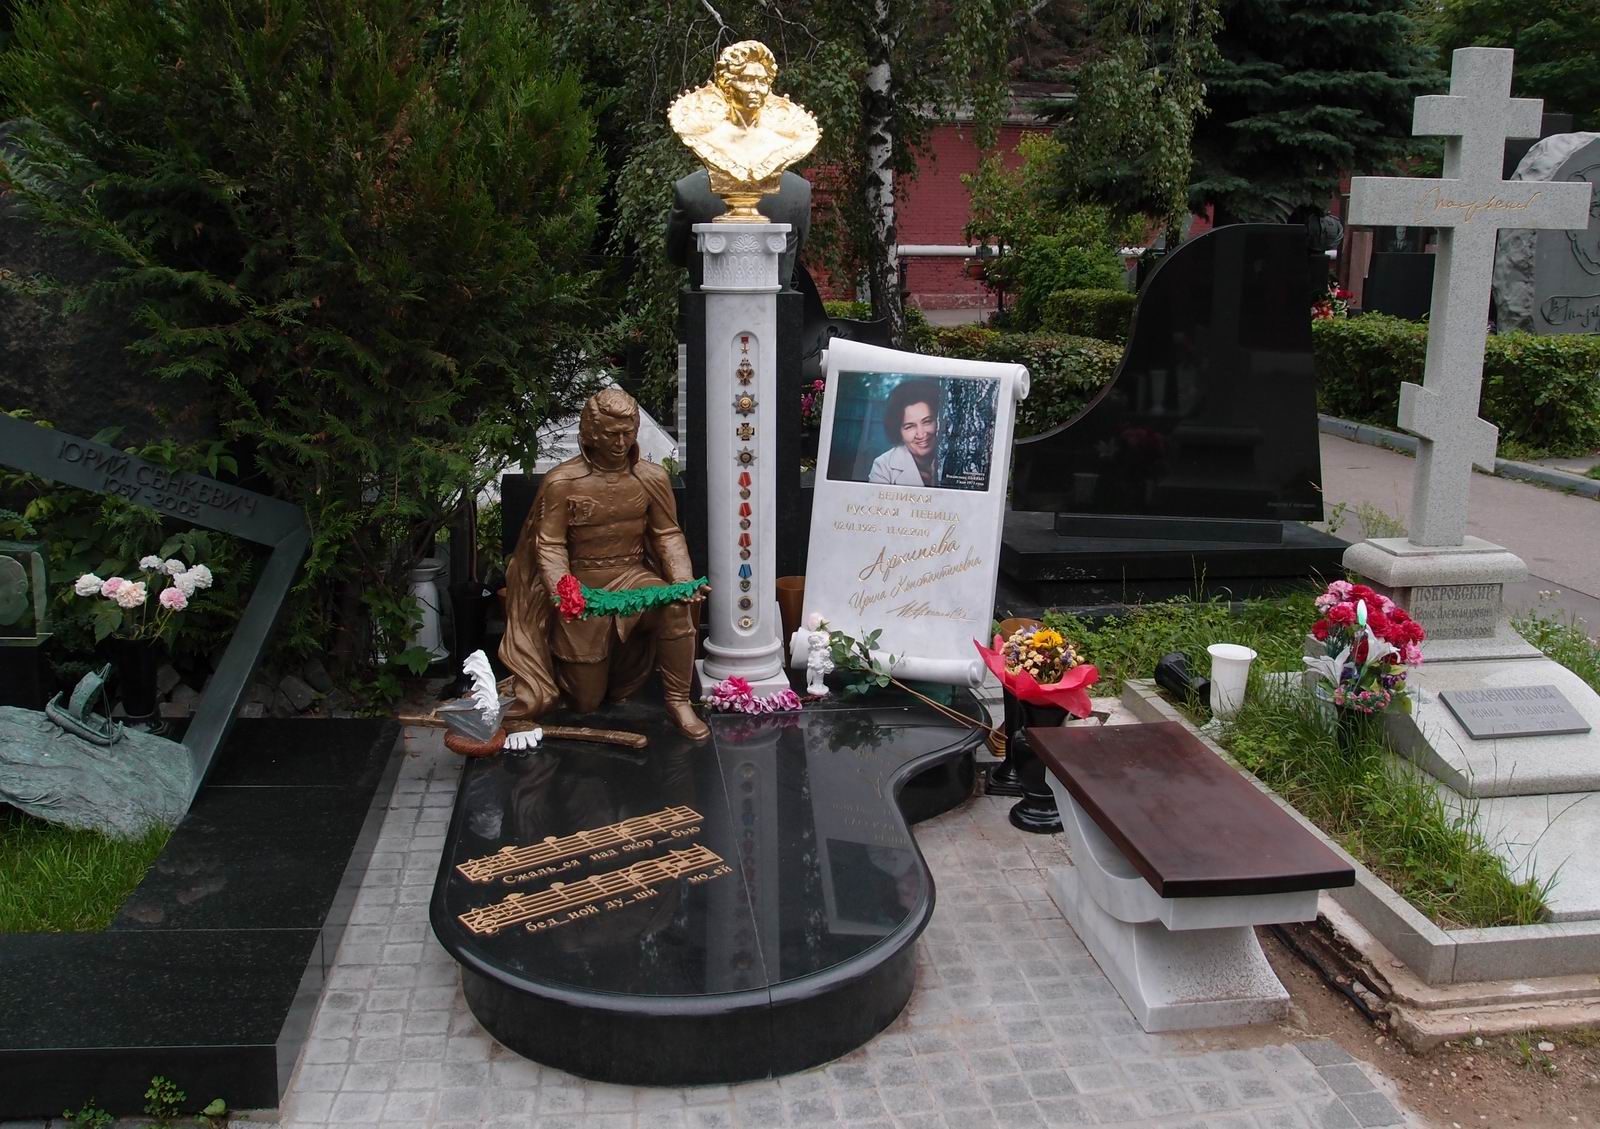 Памятник на могиле Архиповой И.К. (1925–2010), на Новодевичьем кладбище (10–8–18). Нажмите левую кнопку мыши чтобы увидеть фрагмент памятника.